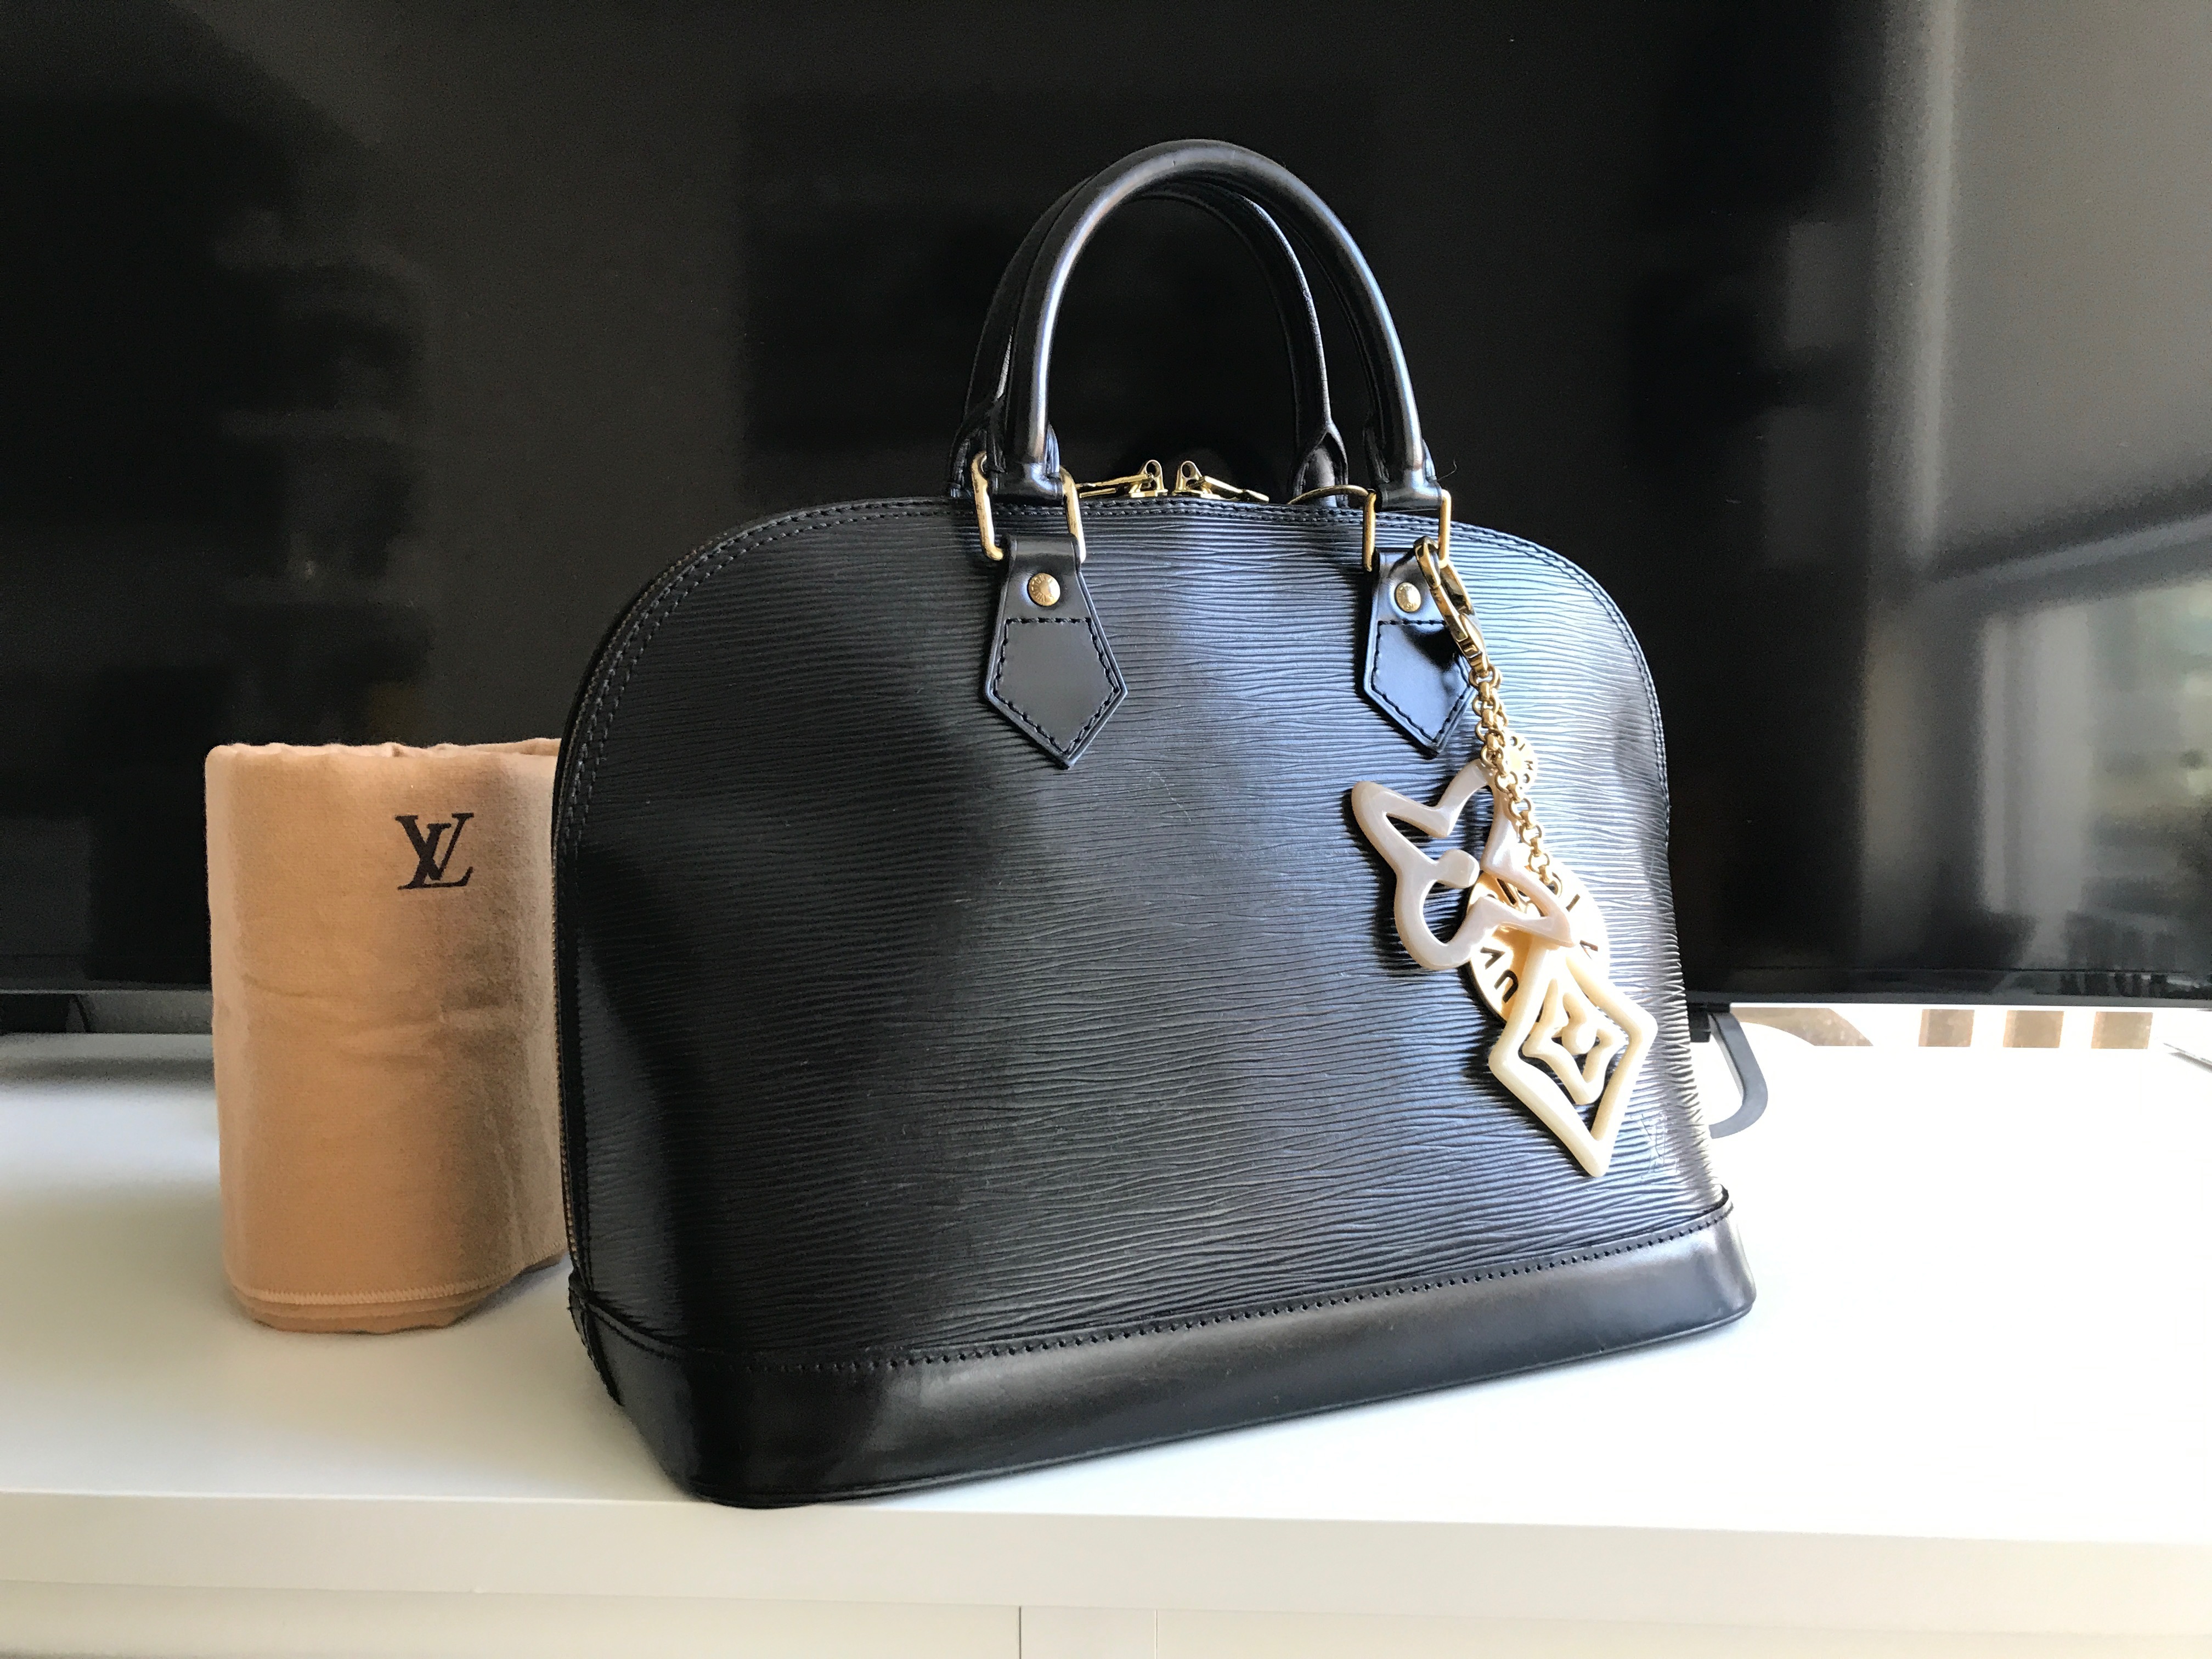 Louis Vuitton - Alma PM - Black Epi Leather - SHW - 2018